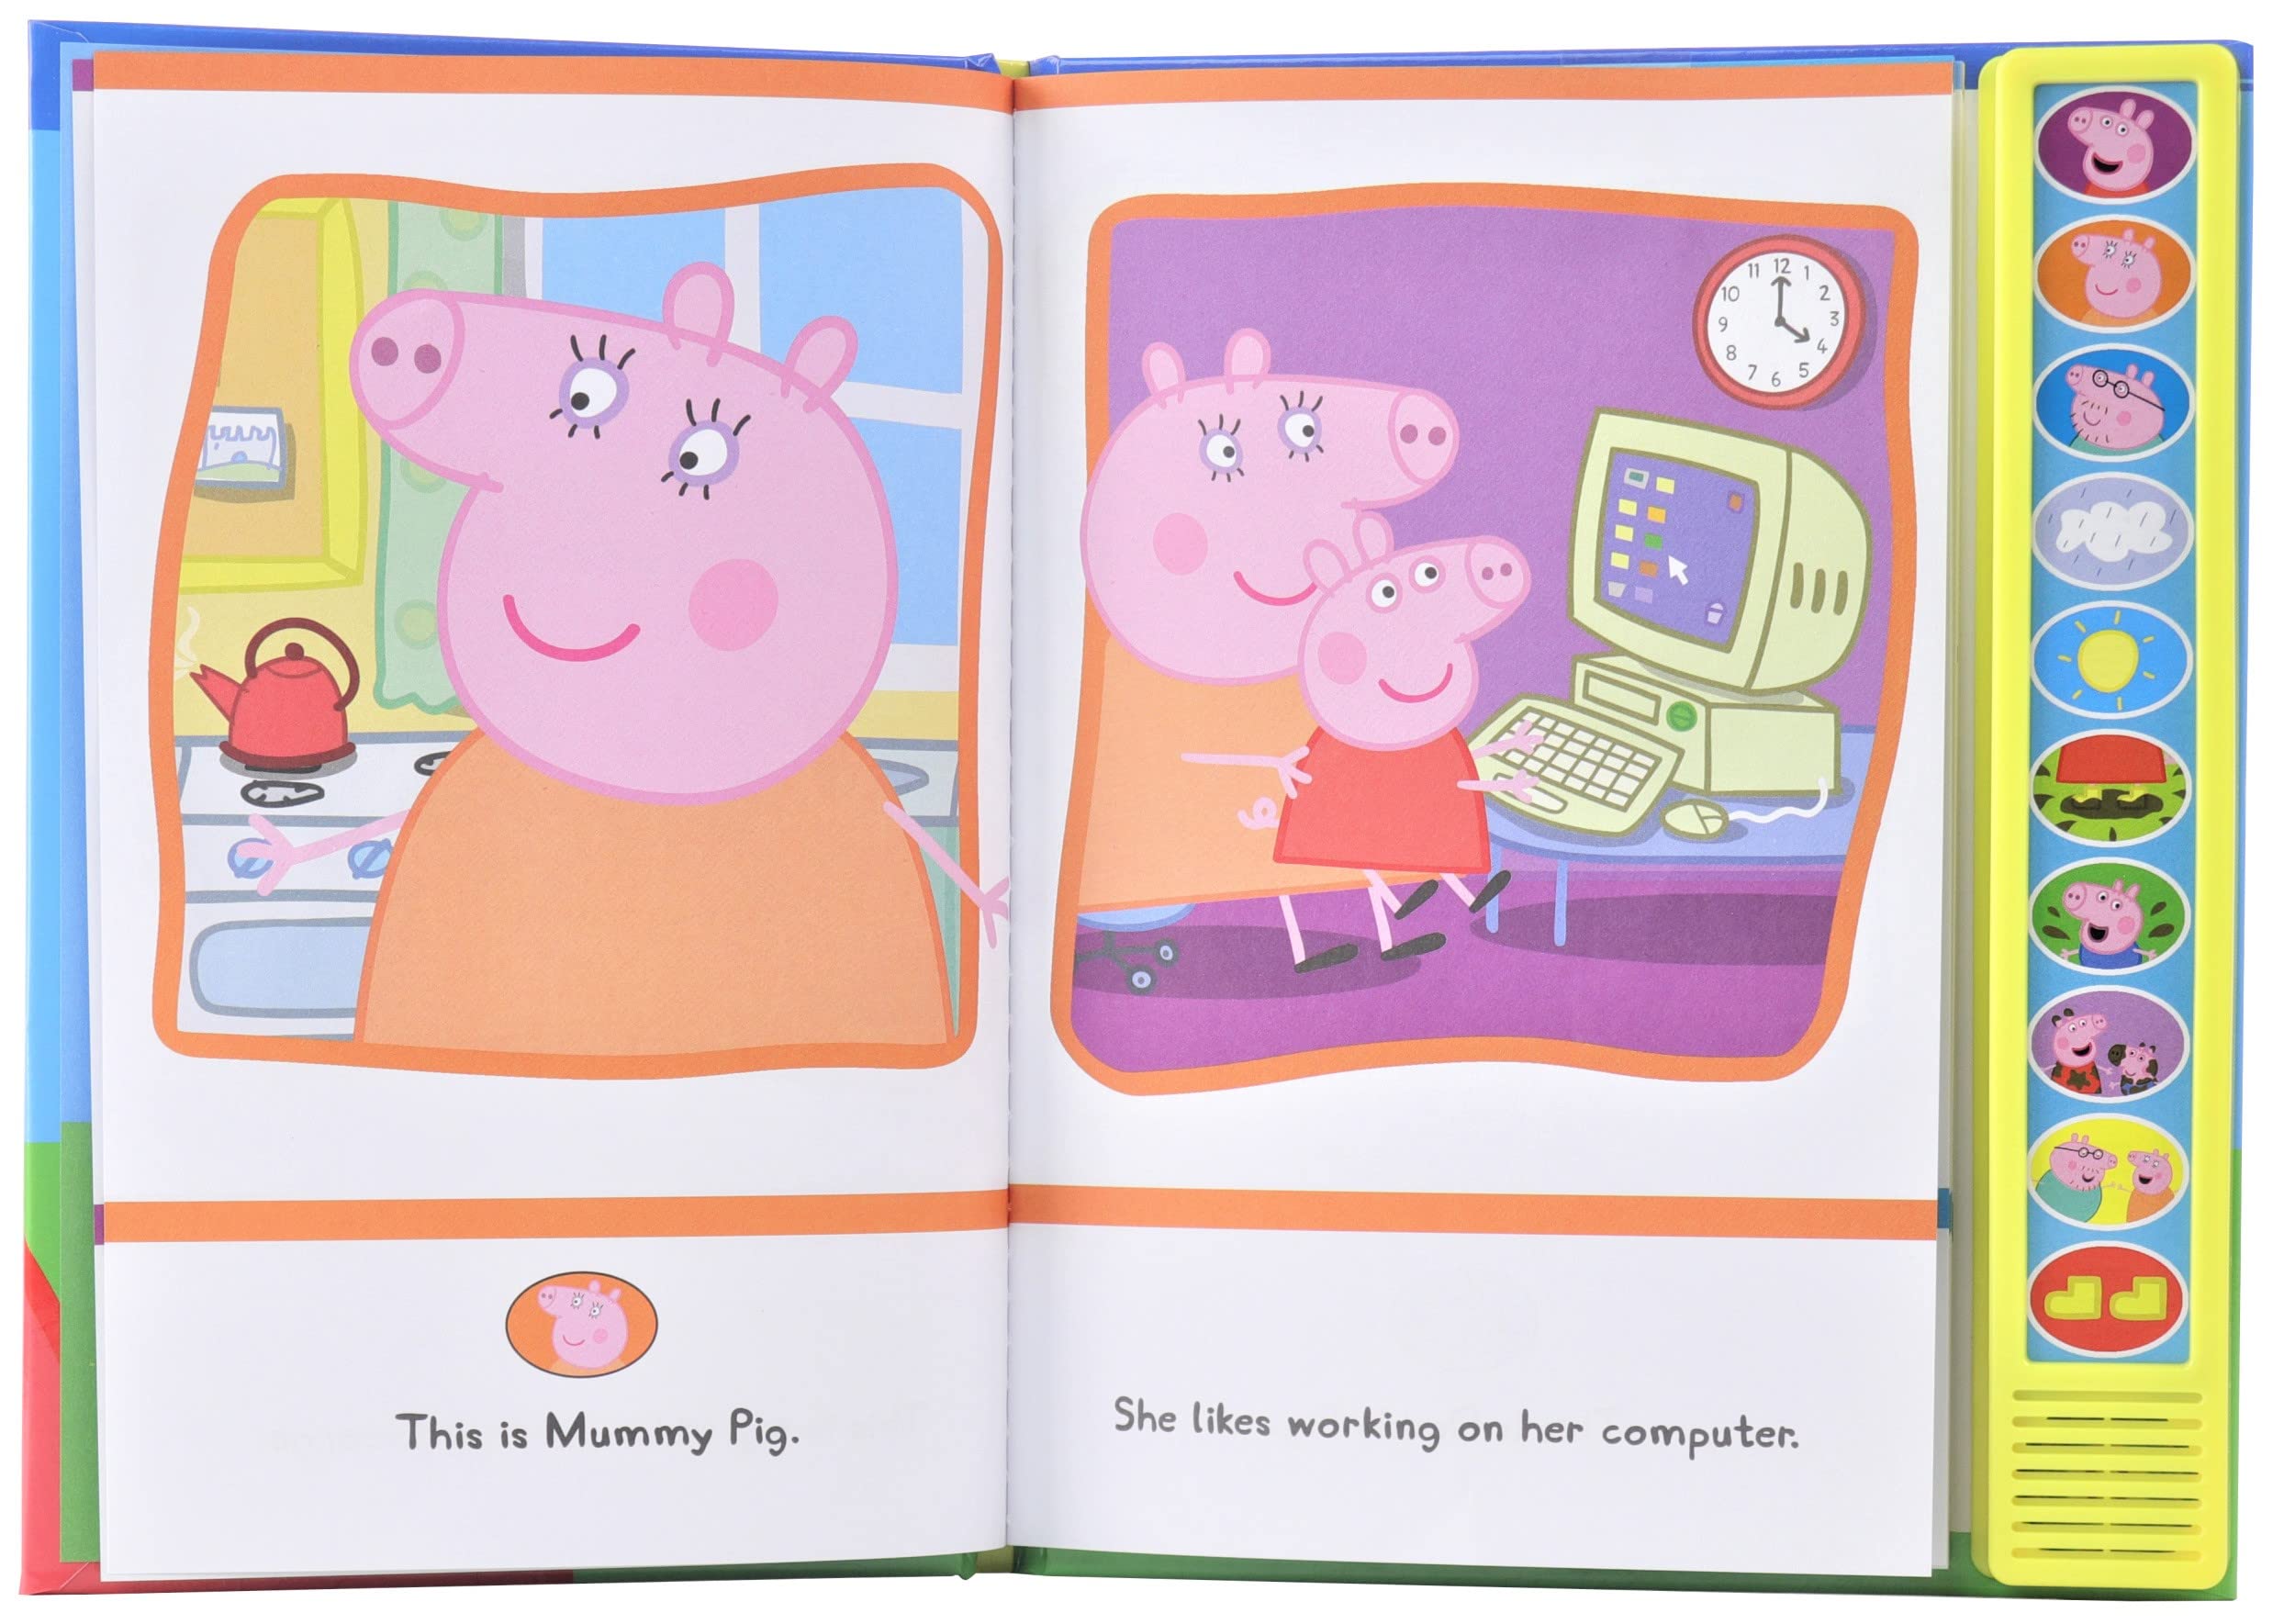 Peppa Pig I'm Ready to Read Sound Book - PI Kids (Play-A-Sound)